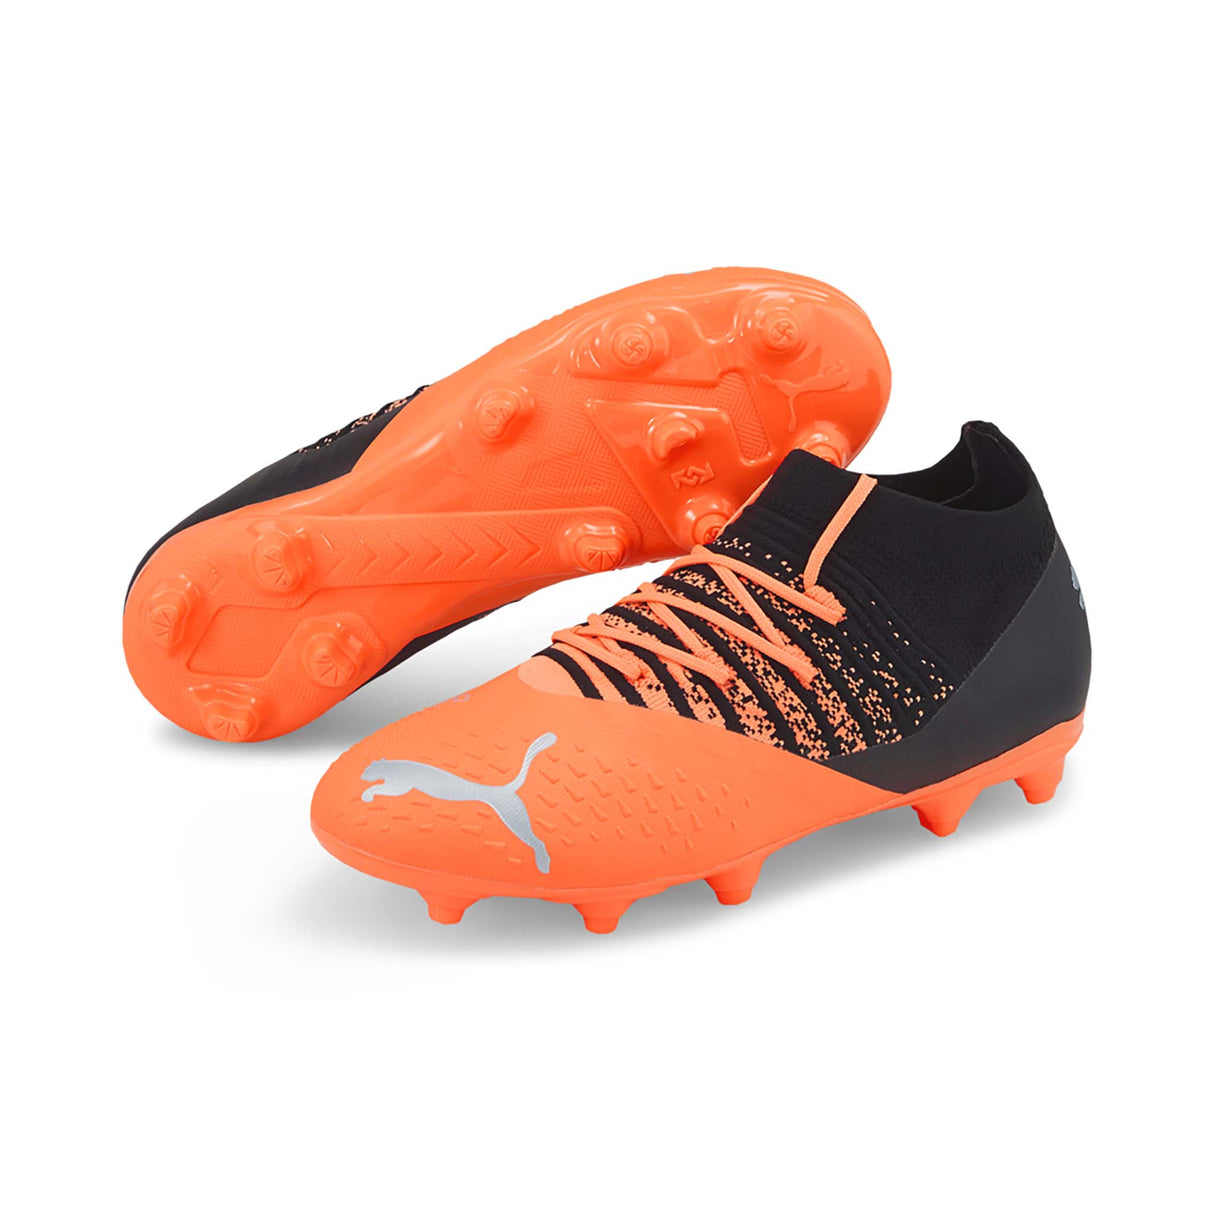 Puma Future Z 3.3 FG/AG souliers de soccer junior citrus silver paire